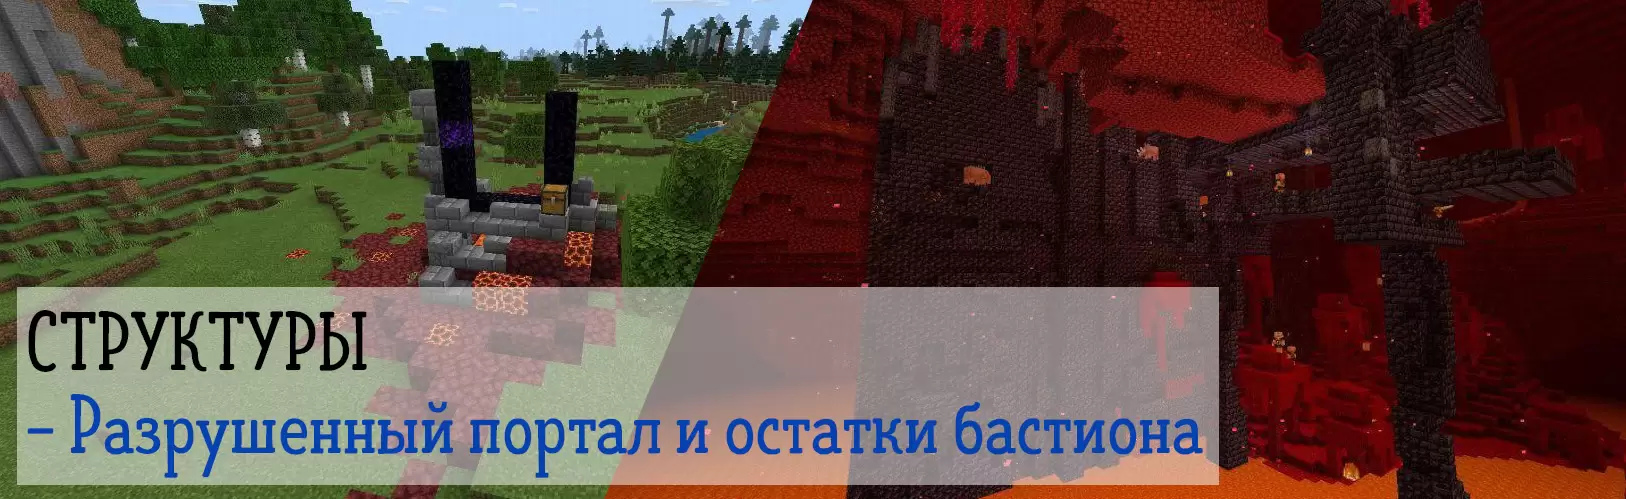 A megsemmisült portál és a bástya maradványai a Minecraft PE 1.16.20.53 -ban